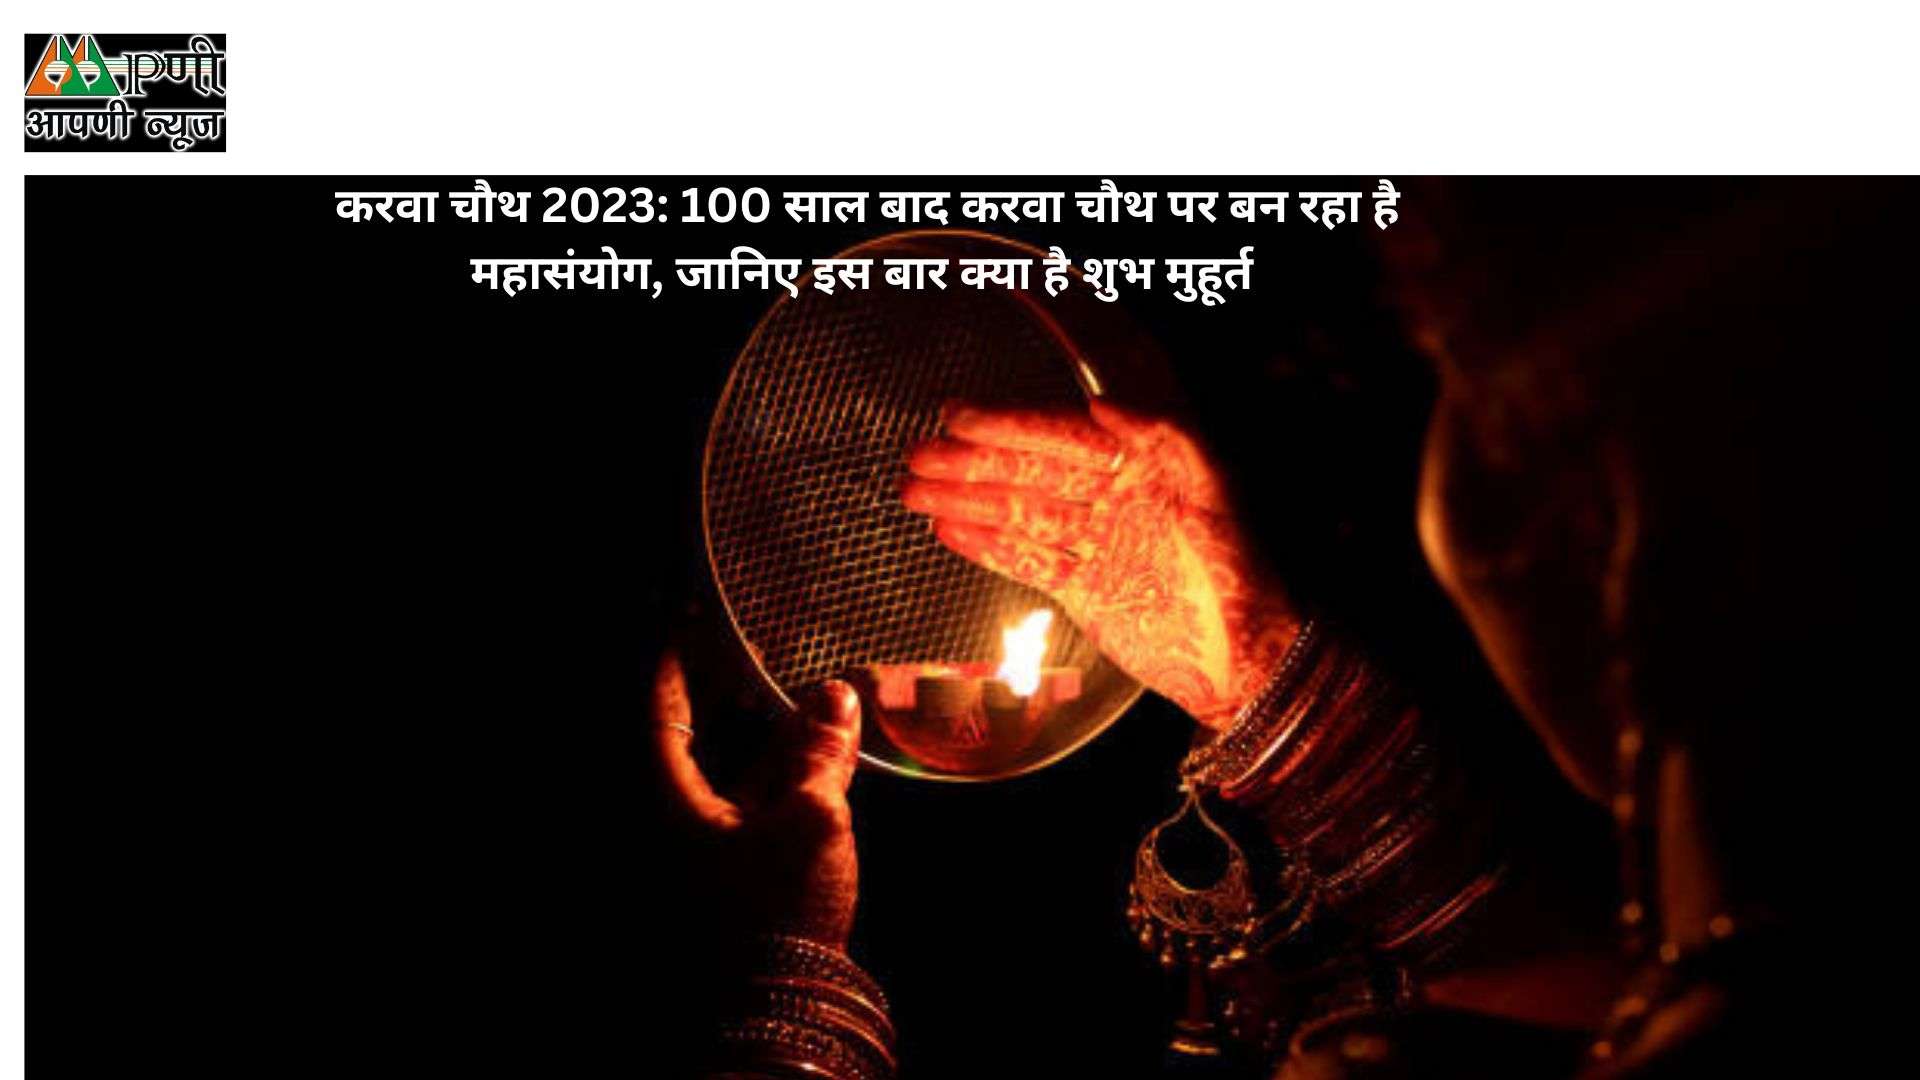 करवा चौथ 2023: 100 साल बाद करवा चौथ पर बन रहा है महासंयोग, जानिए इस बार क्या है शुभ मुहूर्त